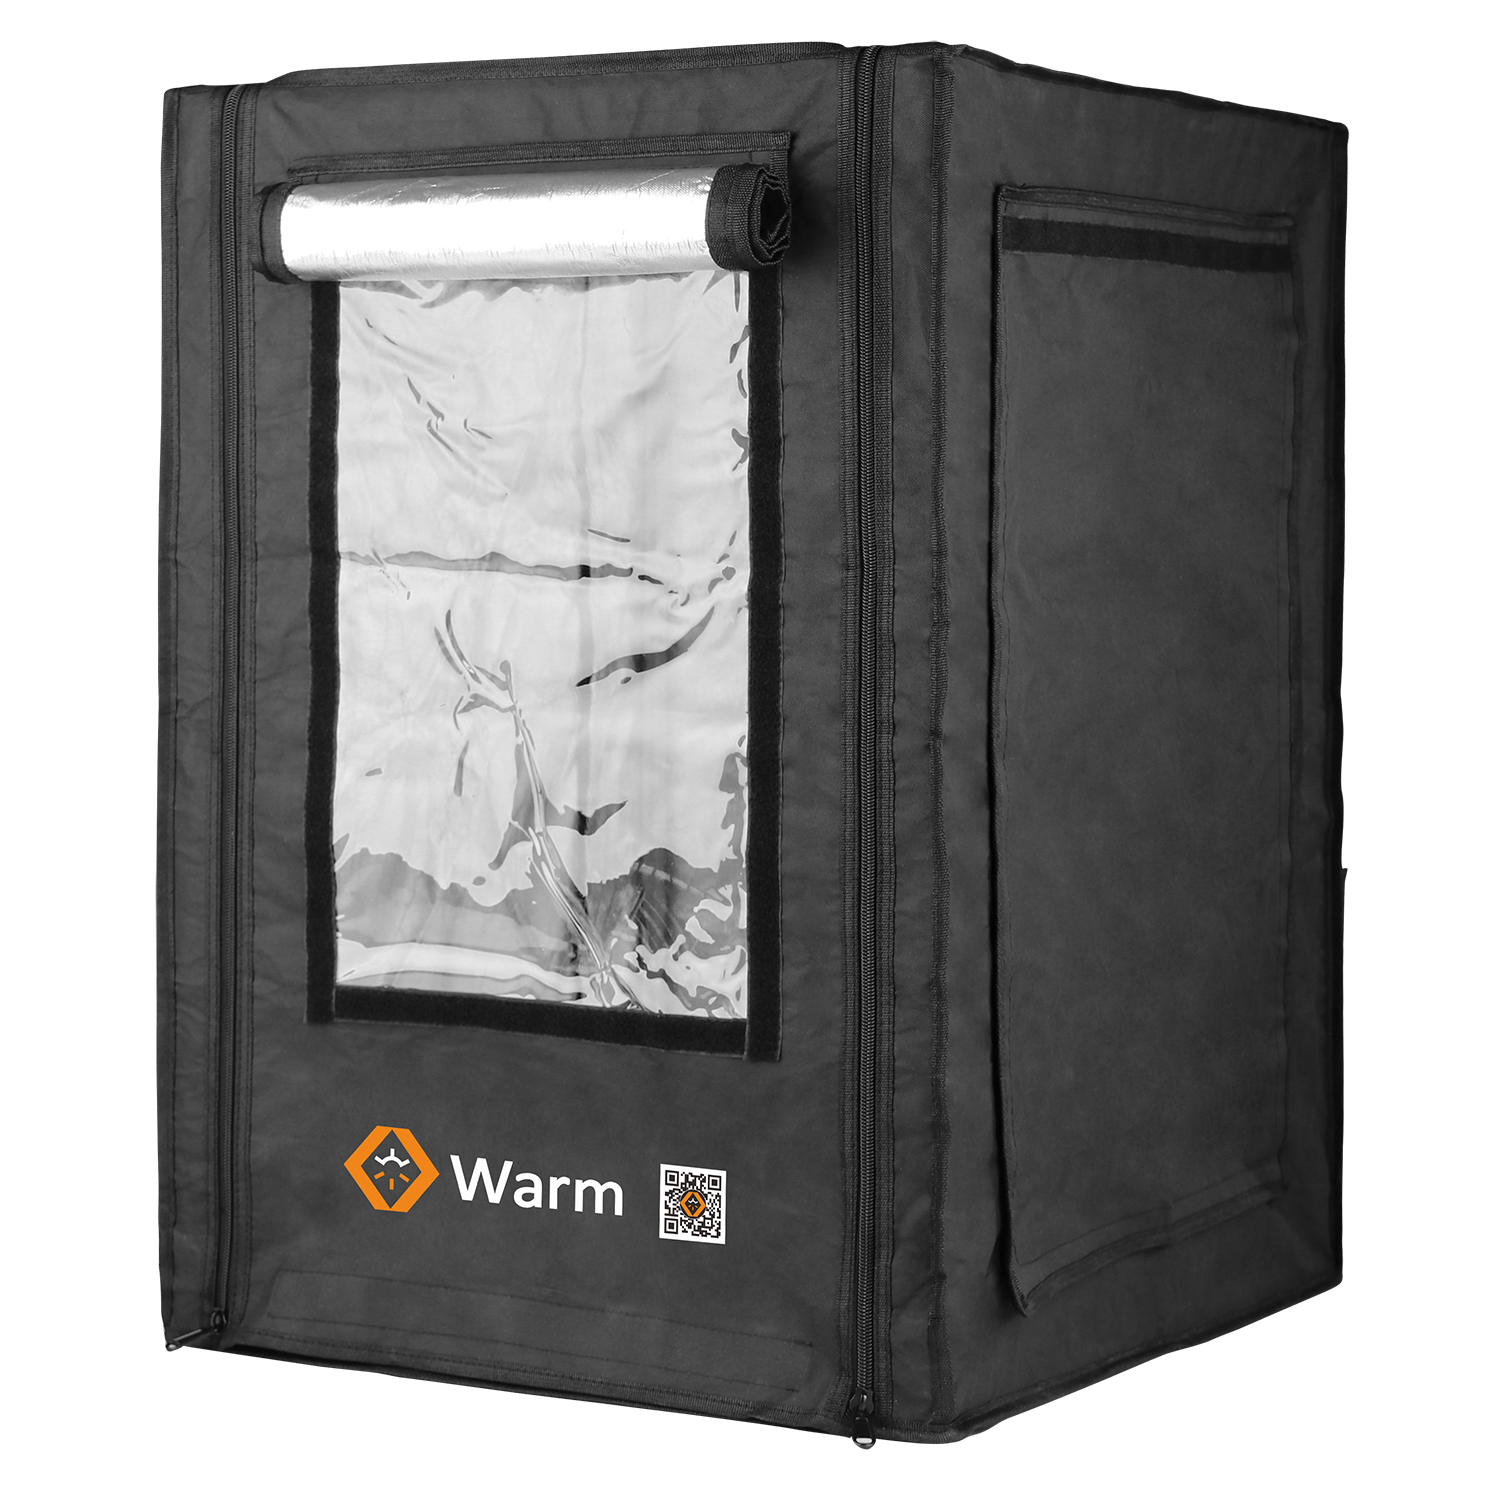 Pro 3D プリンター エンクロージャ、Keep Warm、難燃性、フル カバレッジ、Studio、Warm Pro
